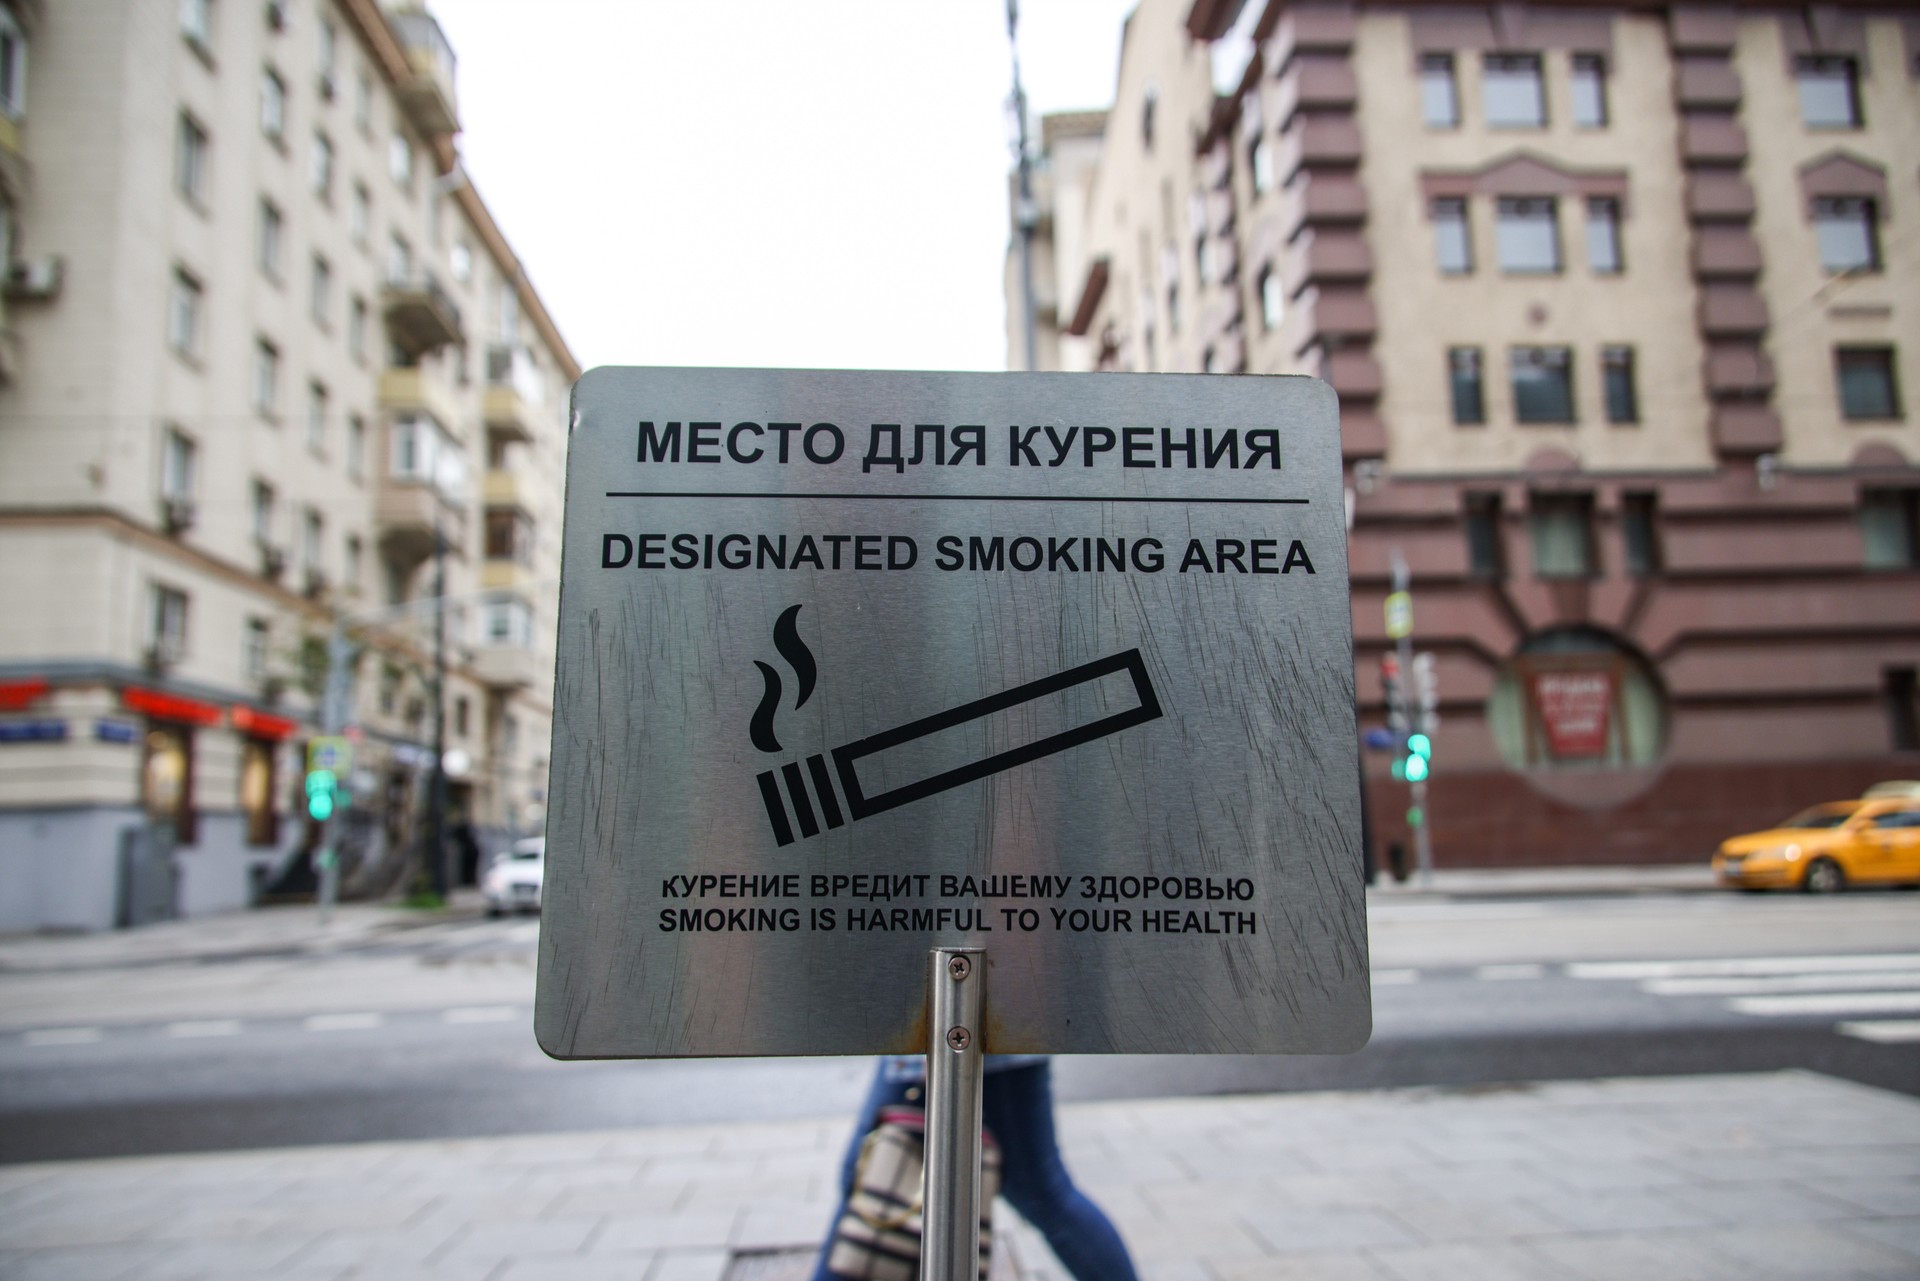 В Госдуме поддержали инициативу о курении вейпов только в специально отведённых местах